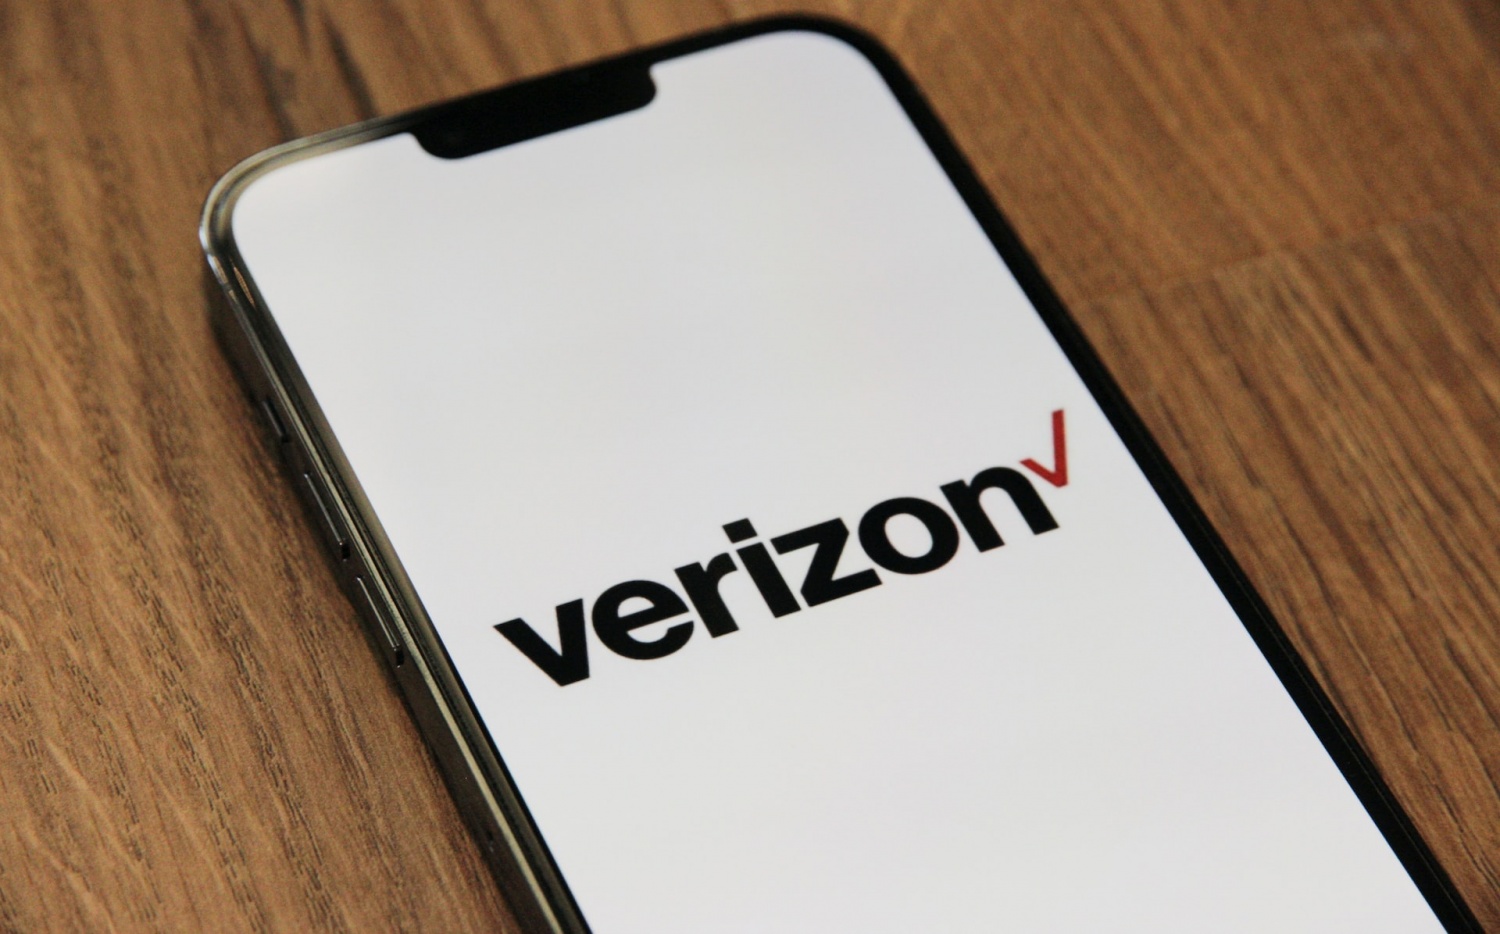 Top Verizon Deals October 2022 iPhone 14 Pro Max Sold at 1,000 Off